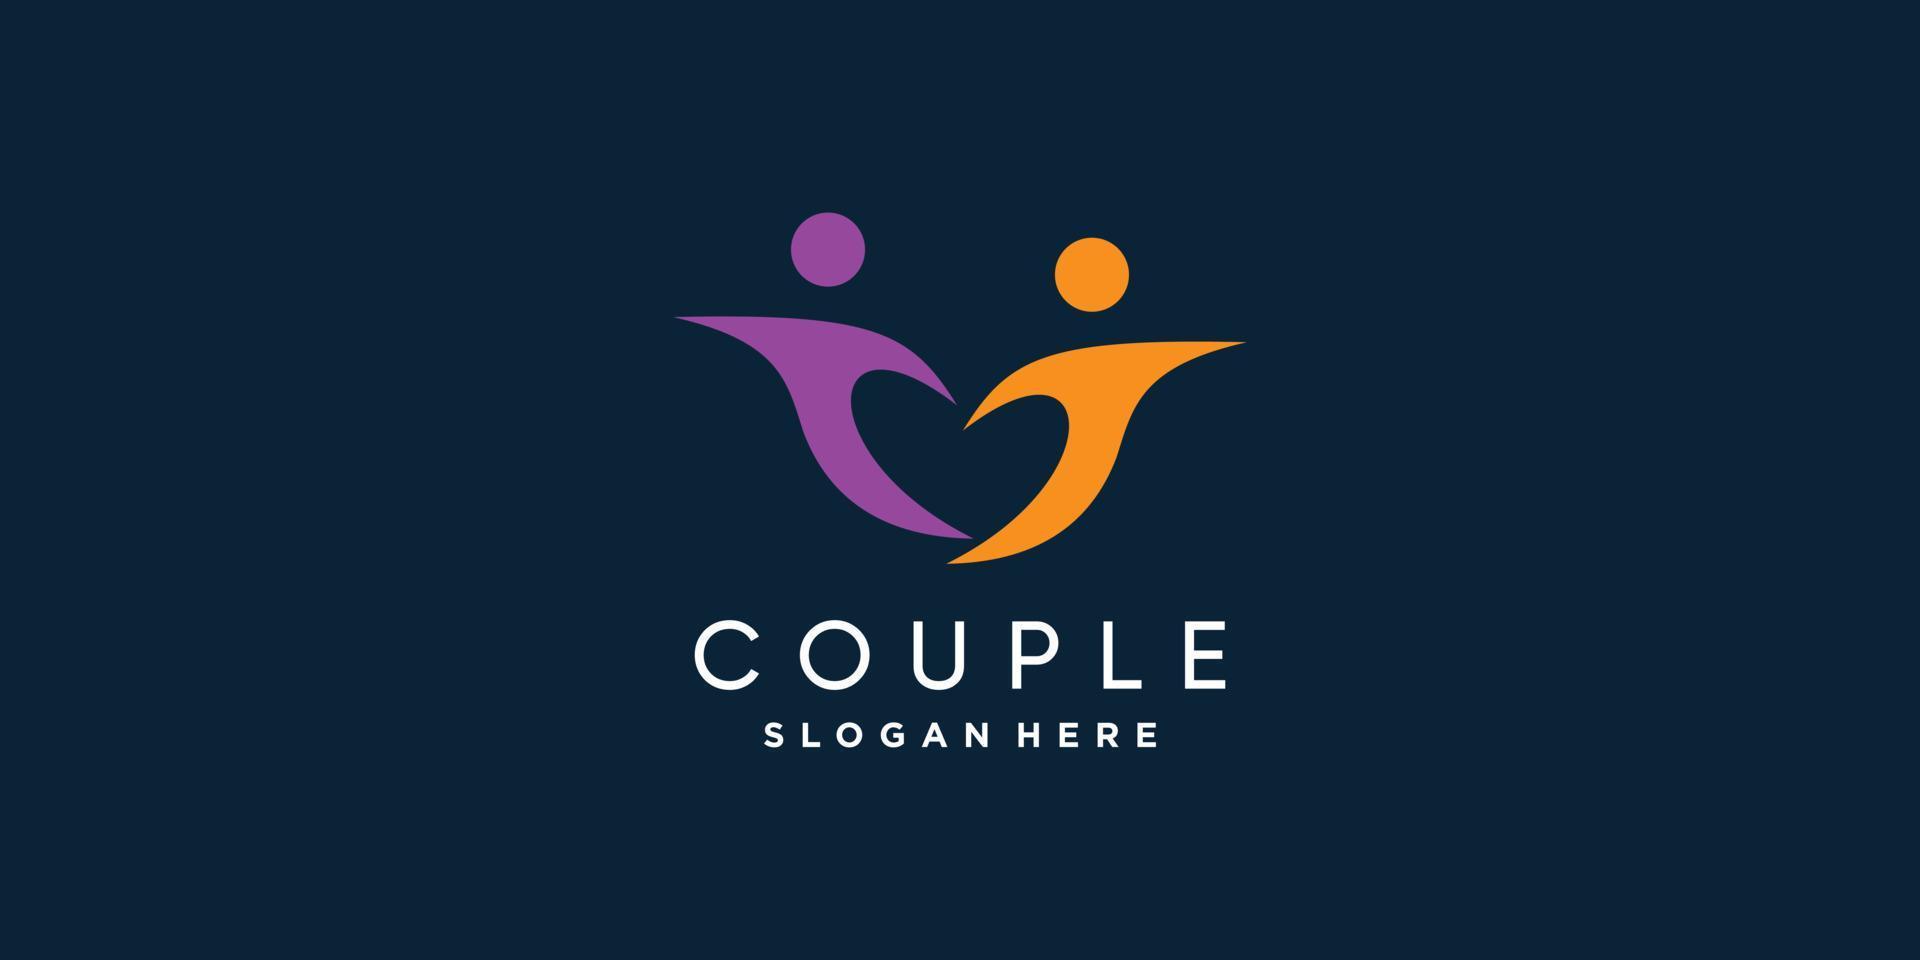 Couple logo with modern unique concept Premium Vector part 2